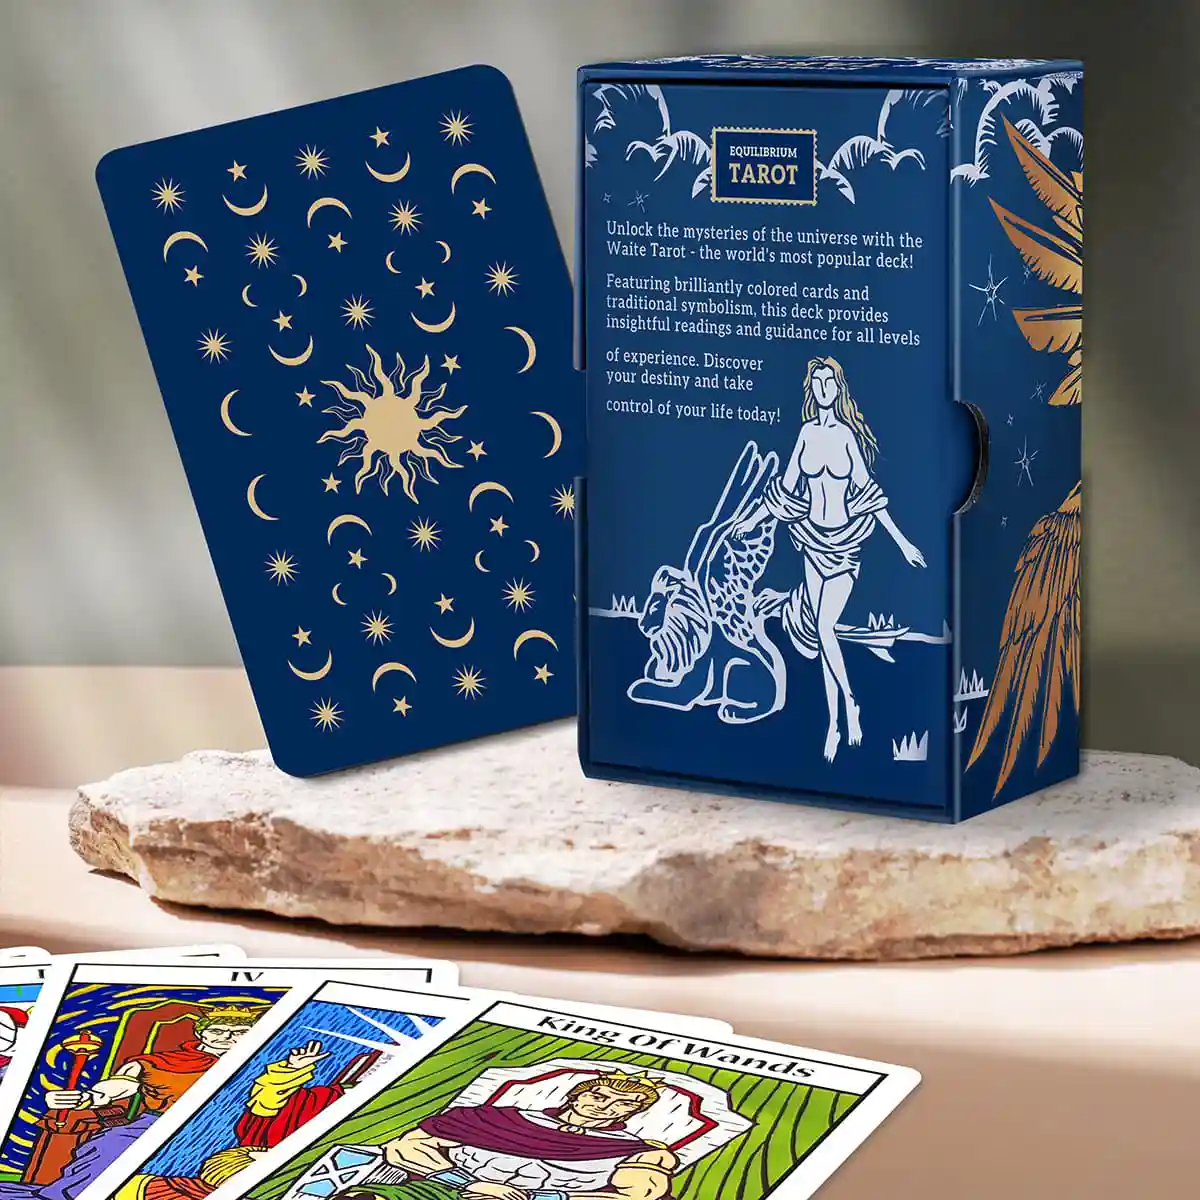 Equilibrium Tarot Cards